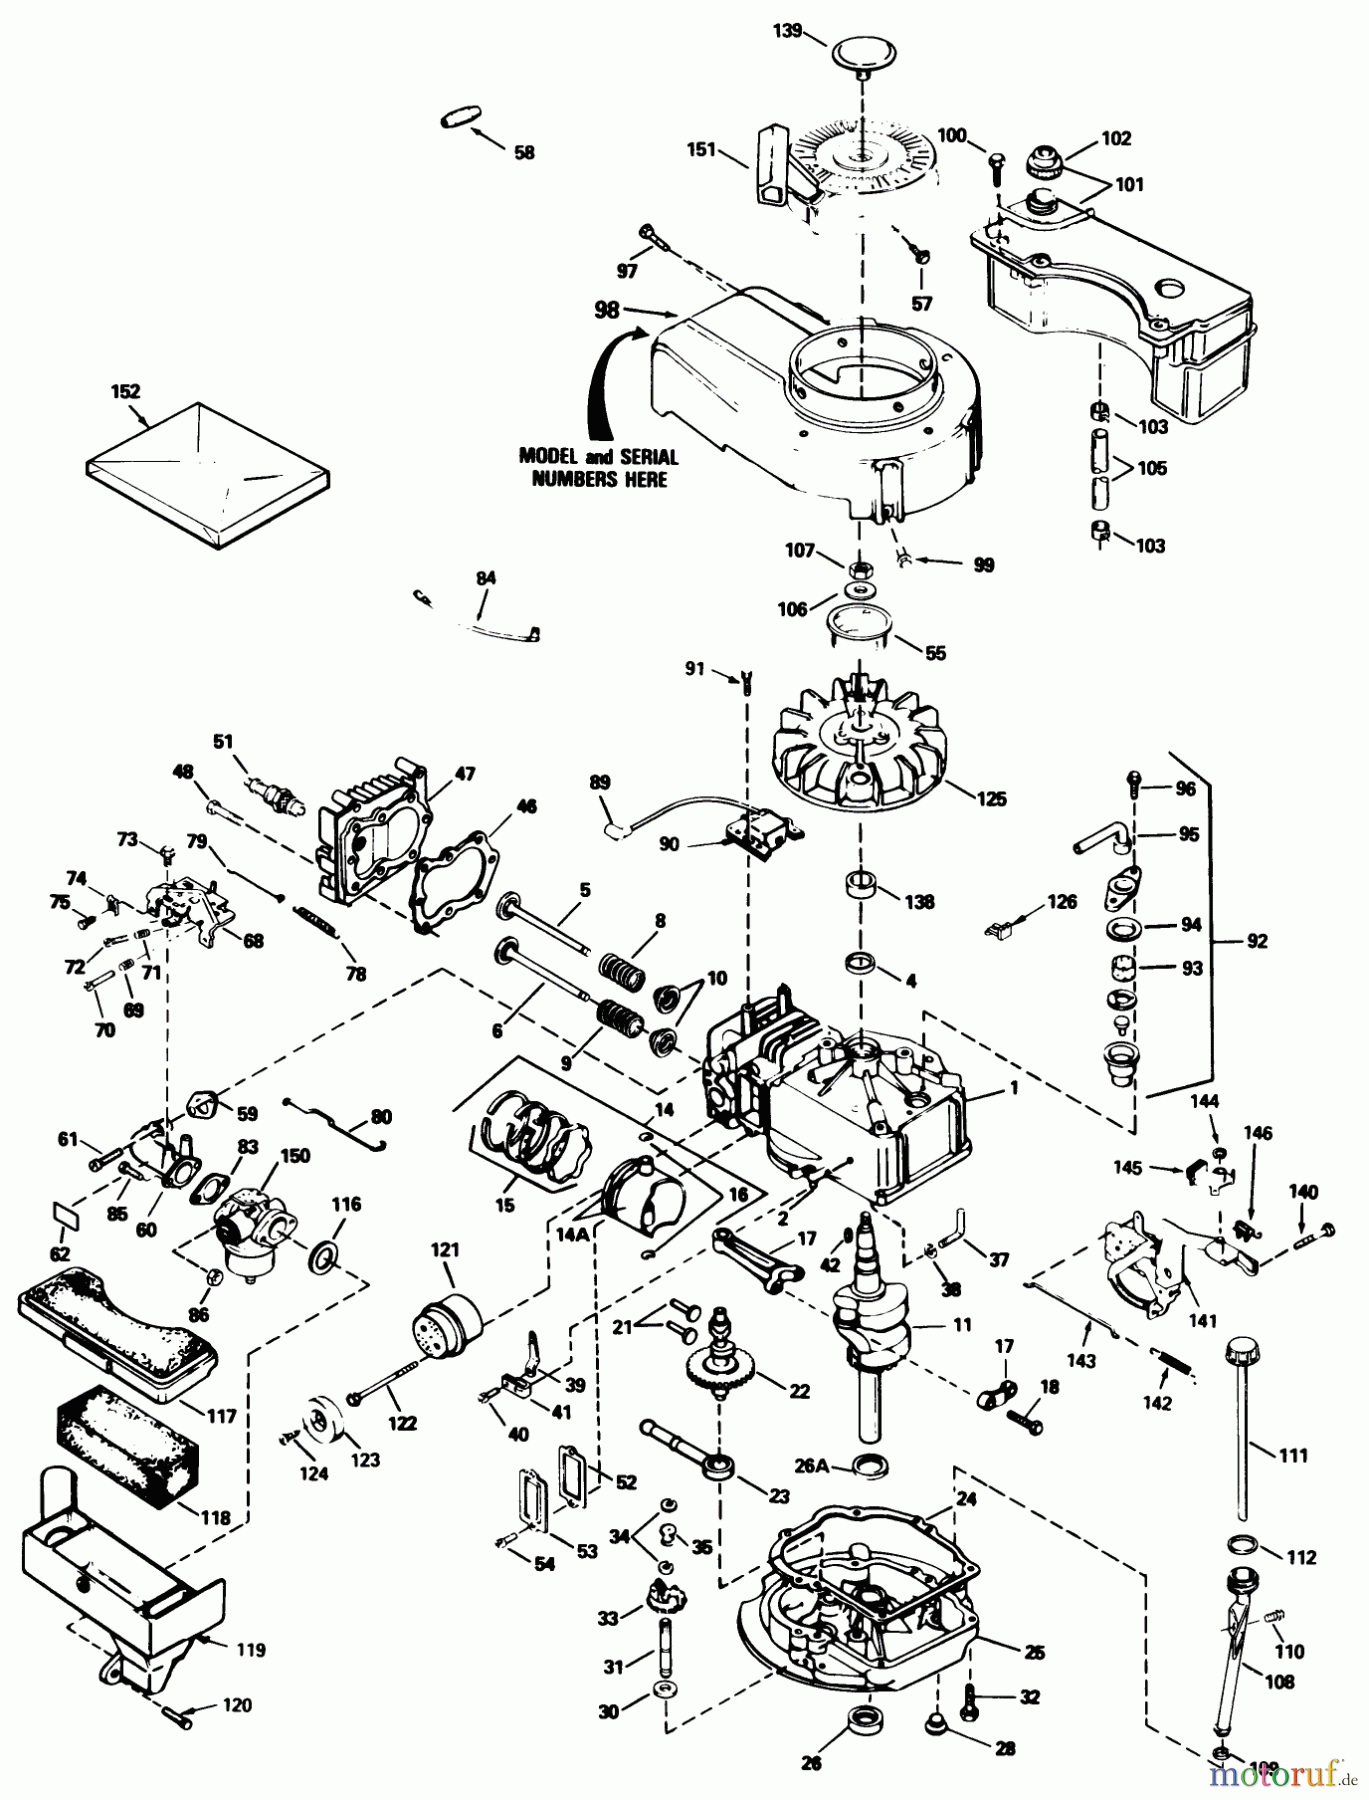  Toro Neu Mowers, Walk-Behind Seite 1 20692C - Toro Lawnmower, 1988 (8000001-8999999) ENGINE TECUMSEH MODEL NO. TVS100-44011B